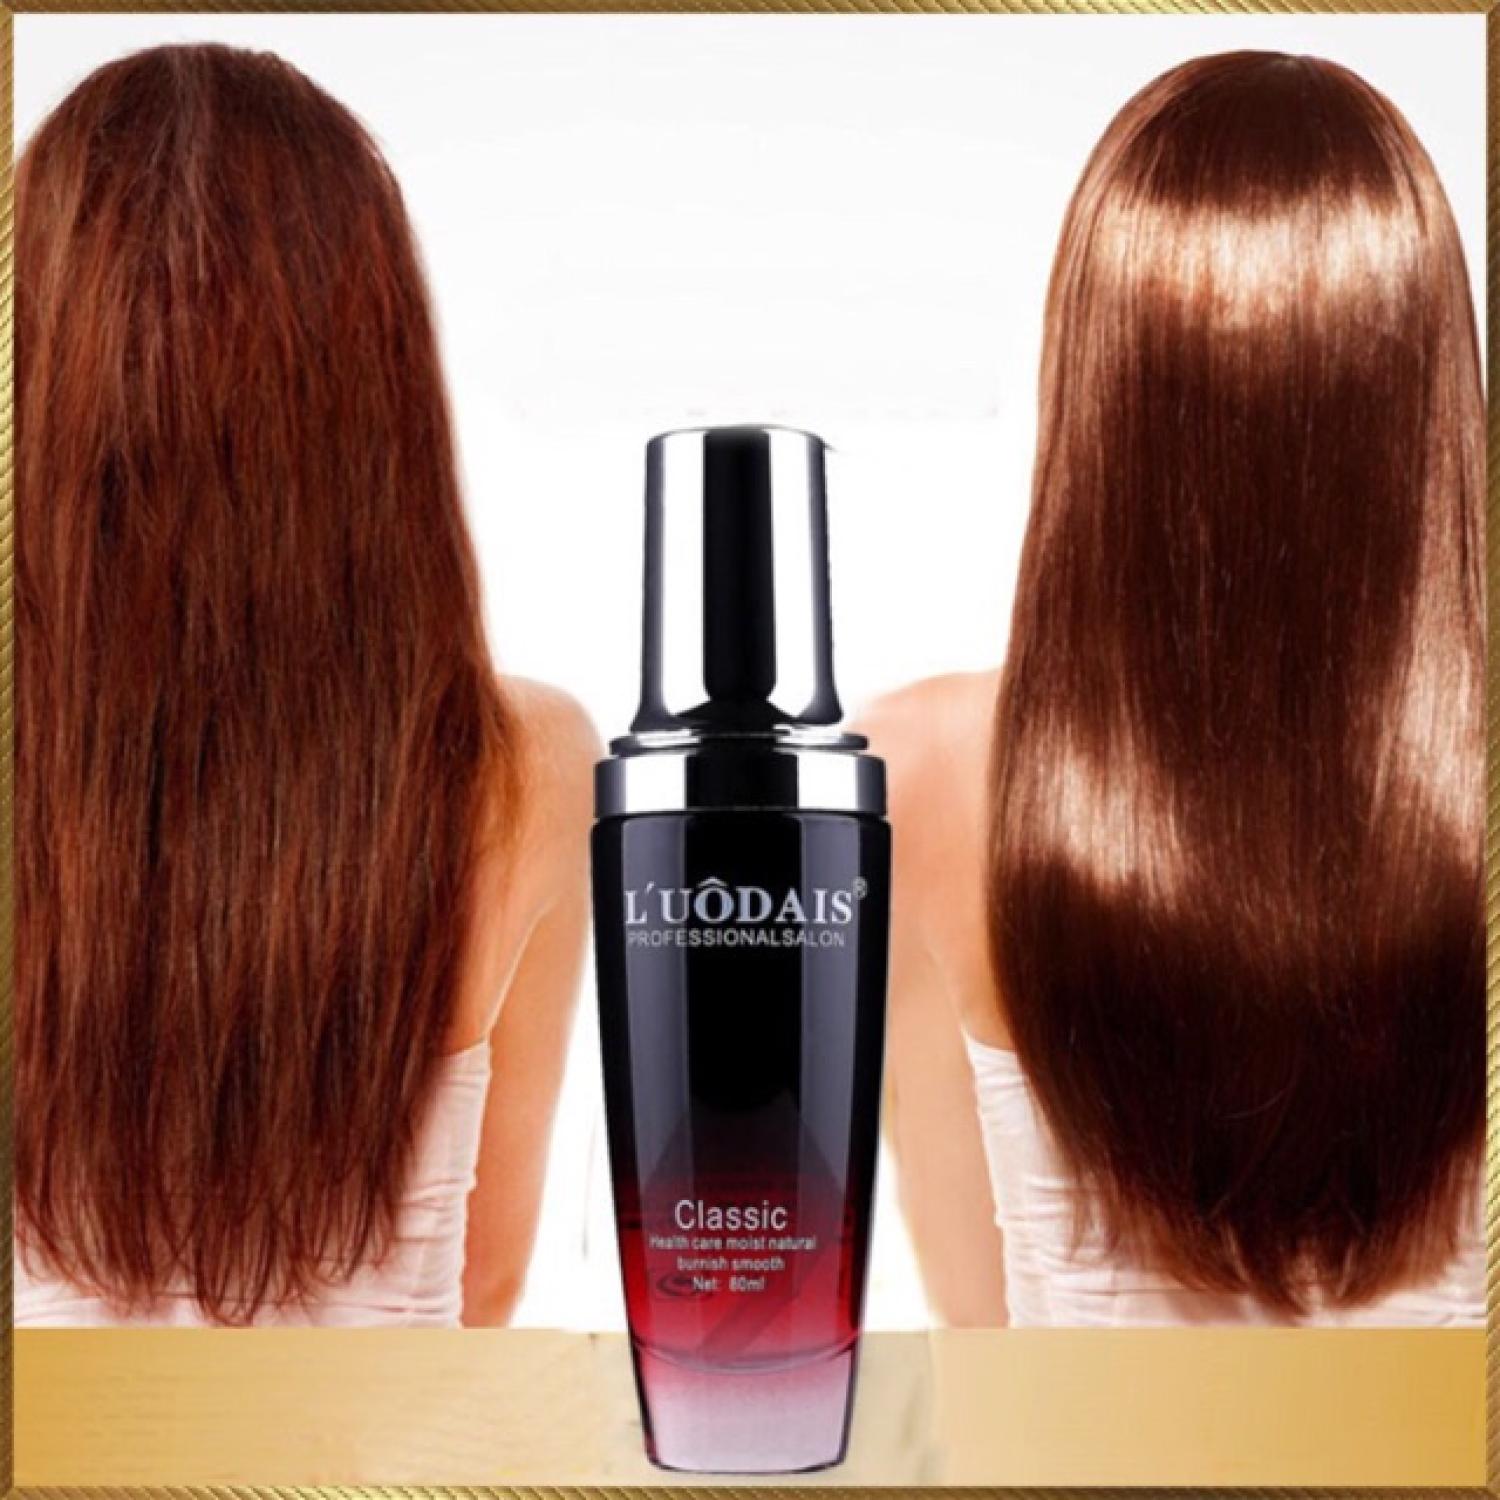 Tinh dầu dưỡng tóc L uodais 80ml có hương thơm nước hoa tinh tế